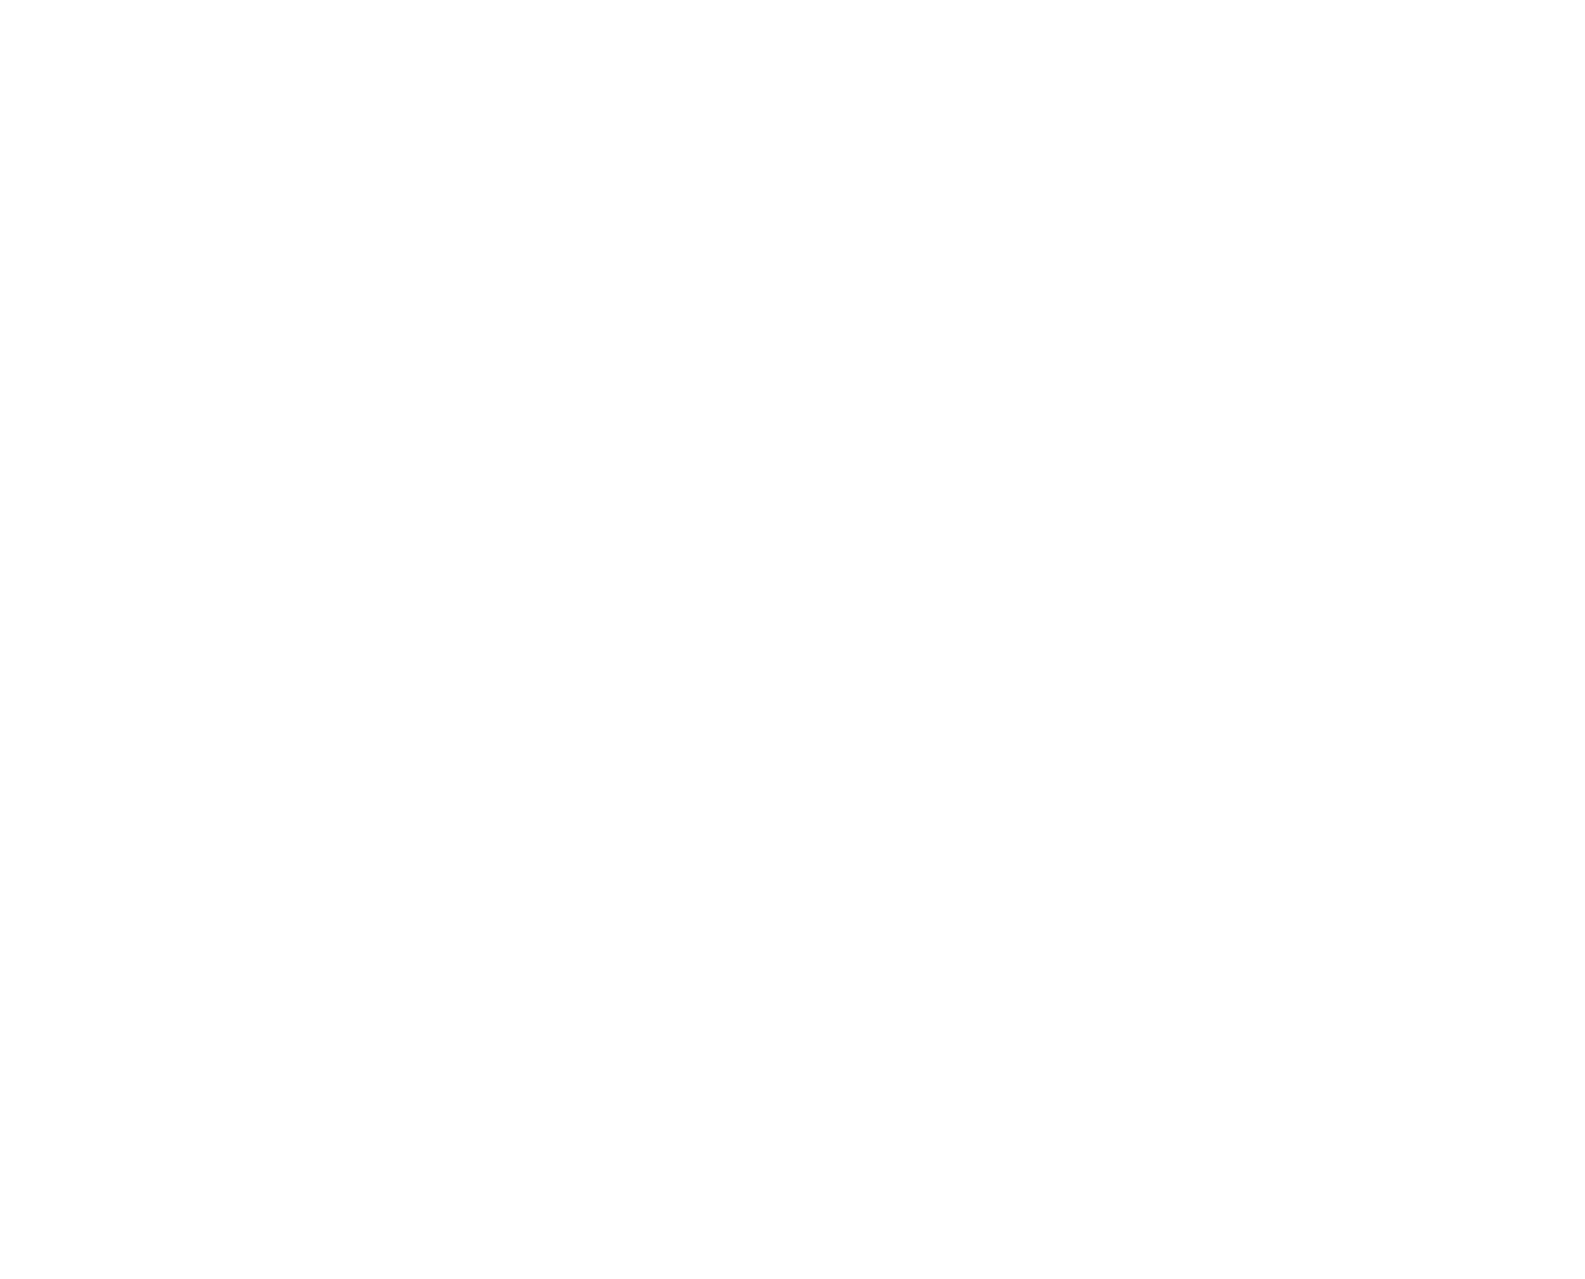 ProSomnus logo for dark backgrounds (transparent PNG)